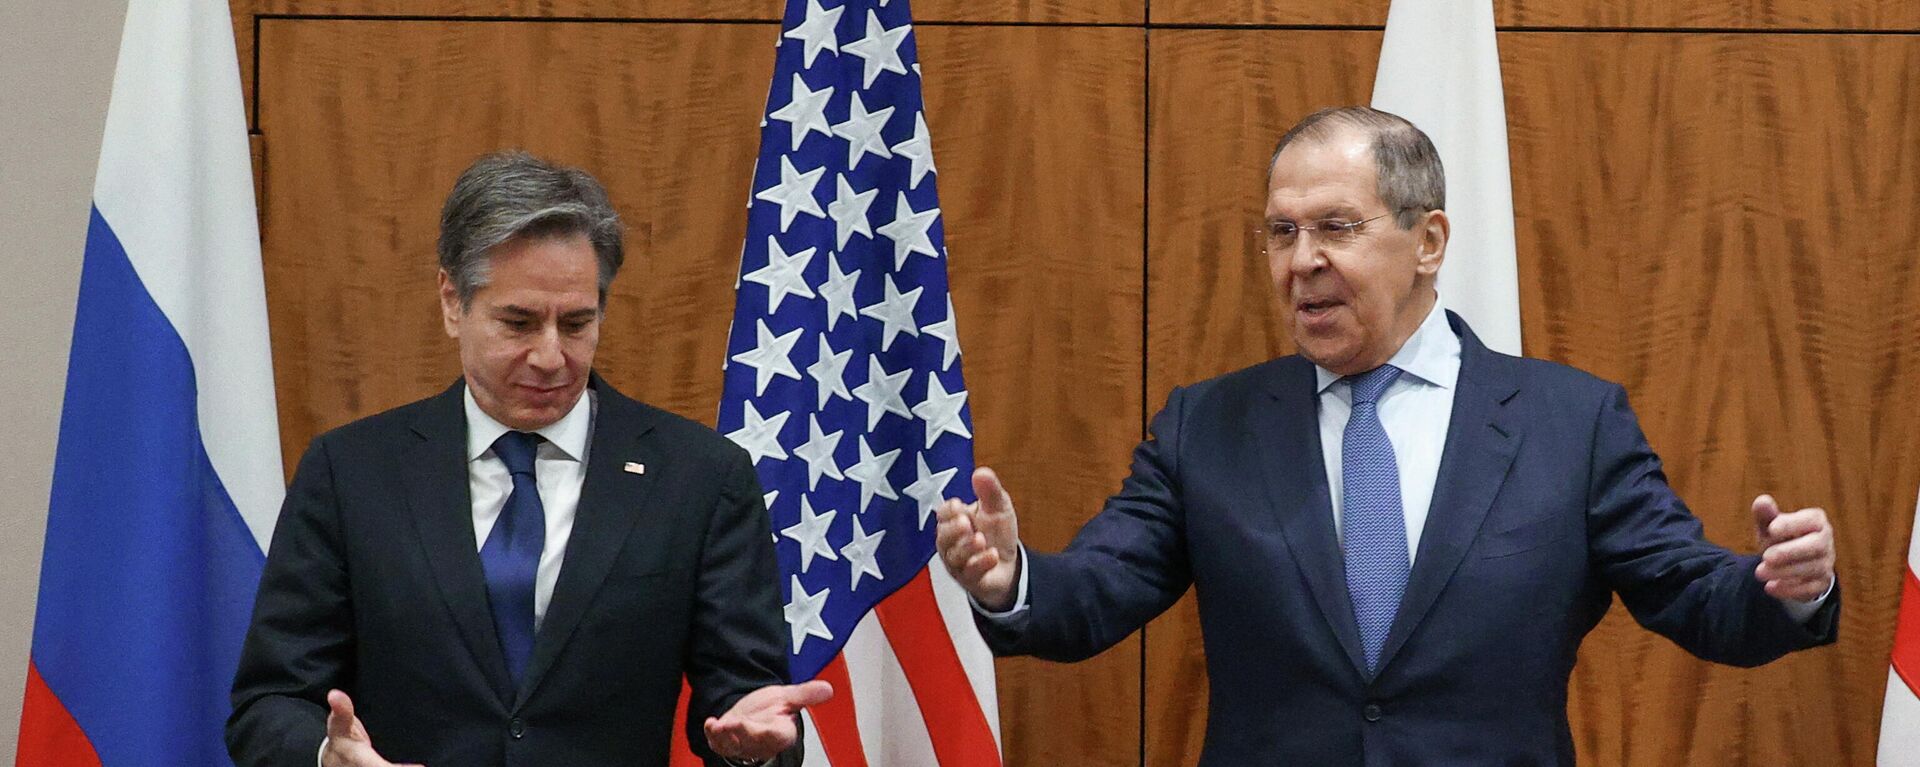 ABD ve Rusya Dışişleri Bakanları Antony Blinken ile Sergey Lavrov'un Cenevre görüşmesinden pozlar - Sputnik Türkiye, 1920, 21.01.2022